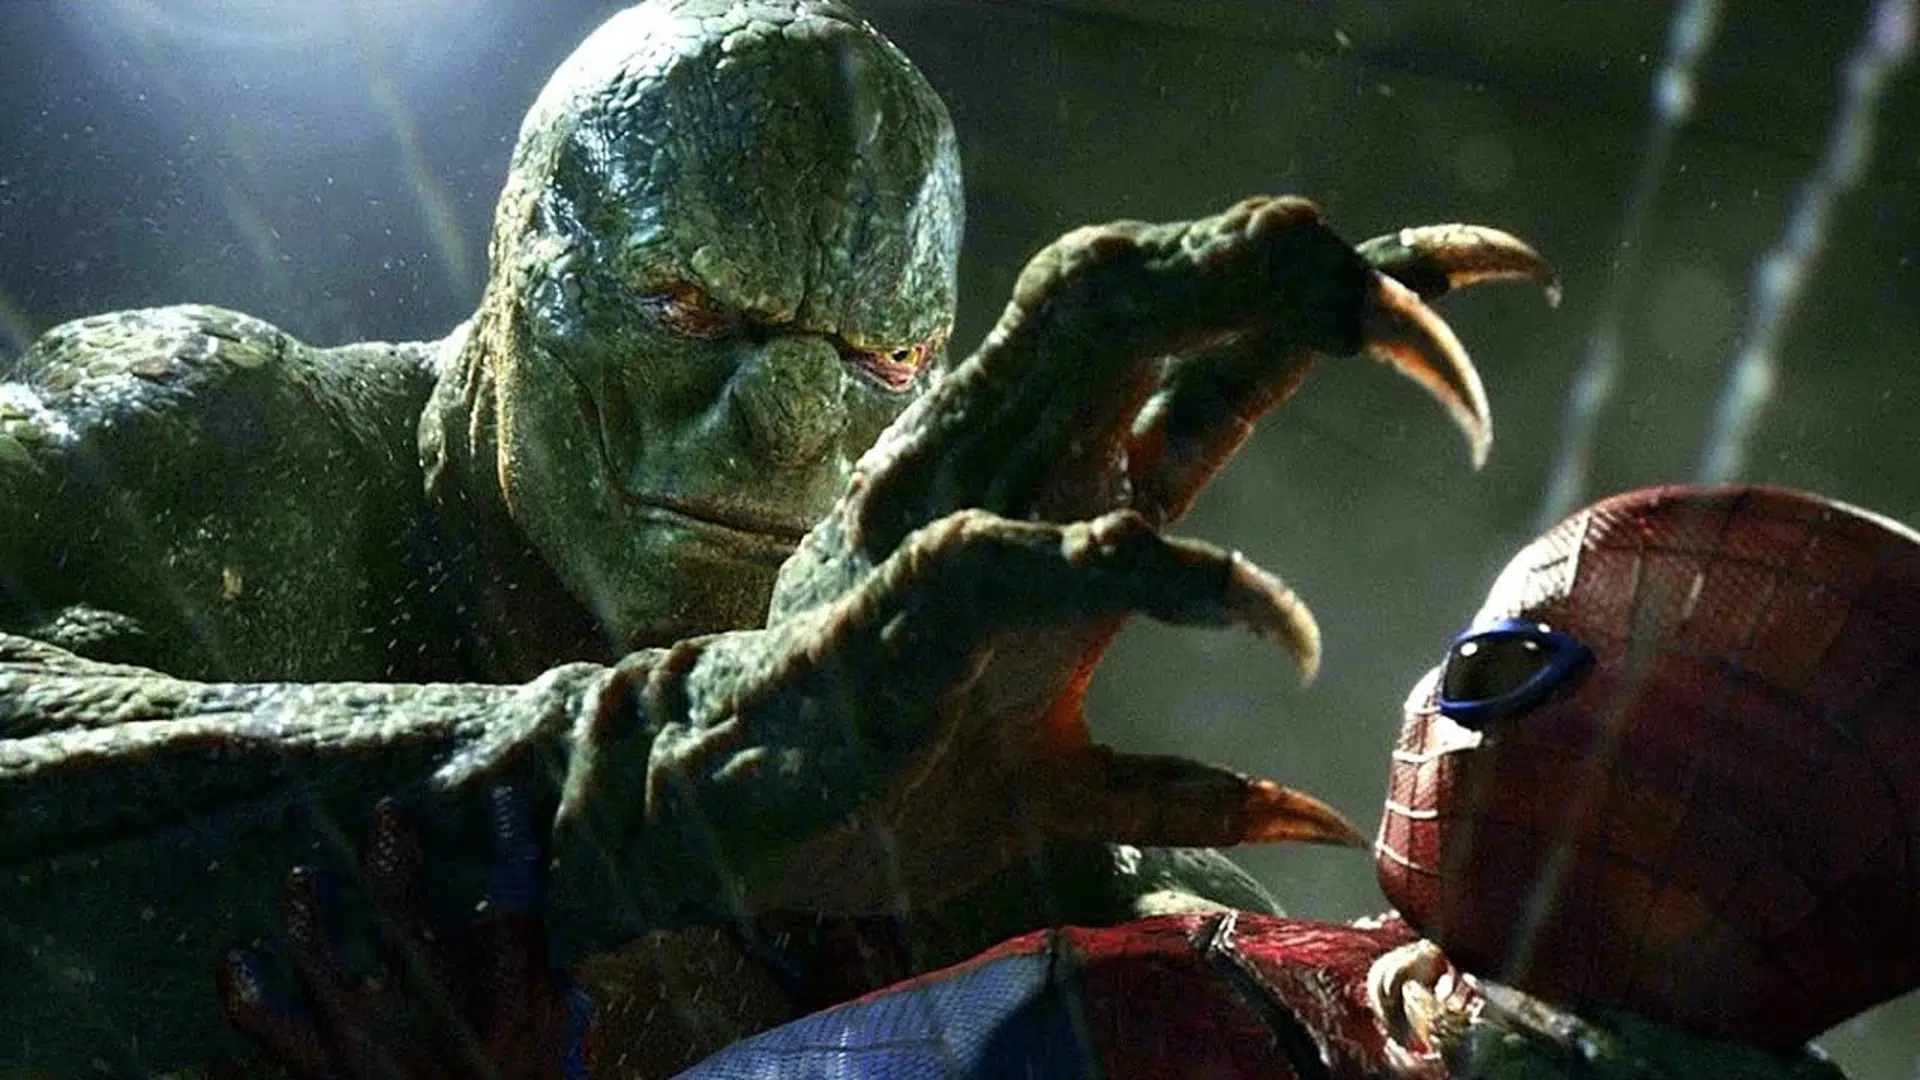 Spider Man Teaser Reveals New Lizard Fight